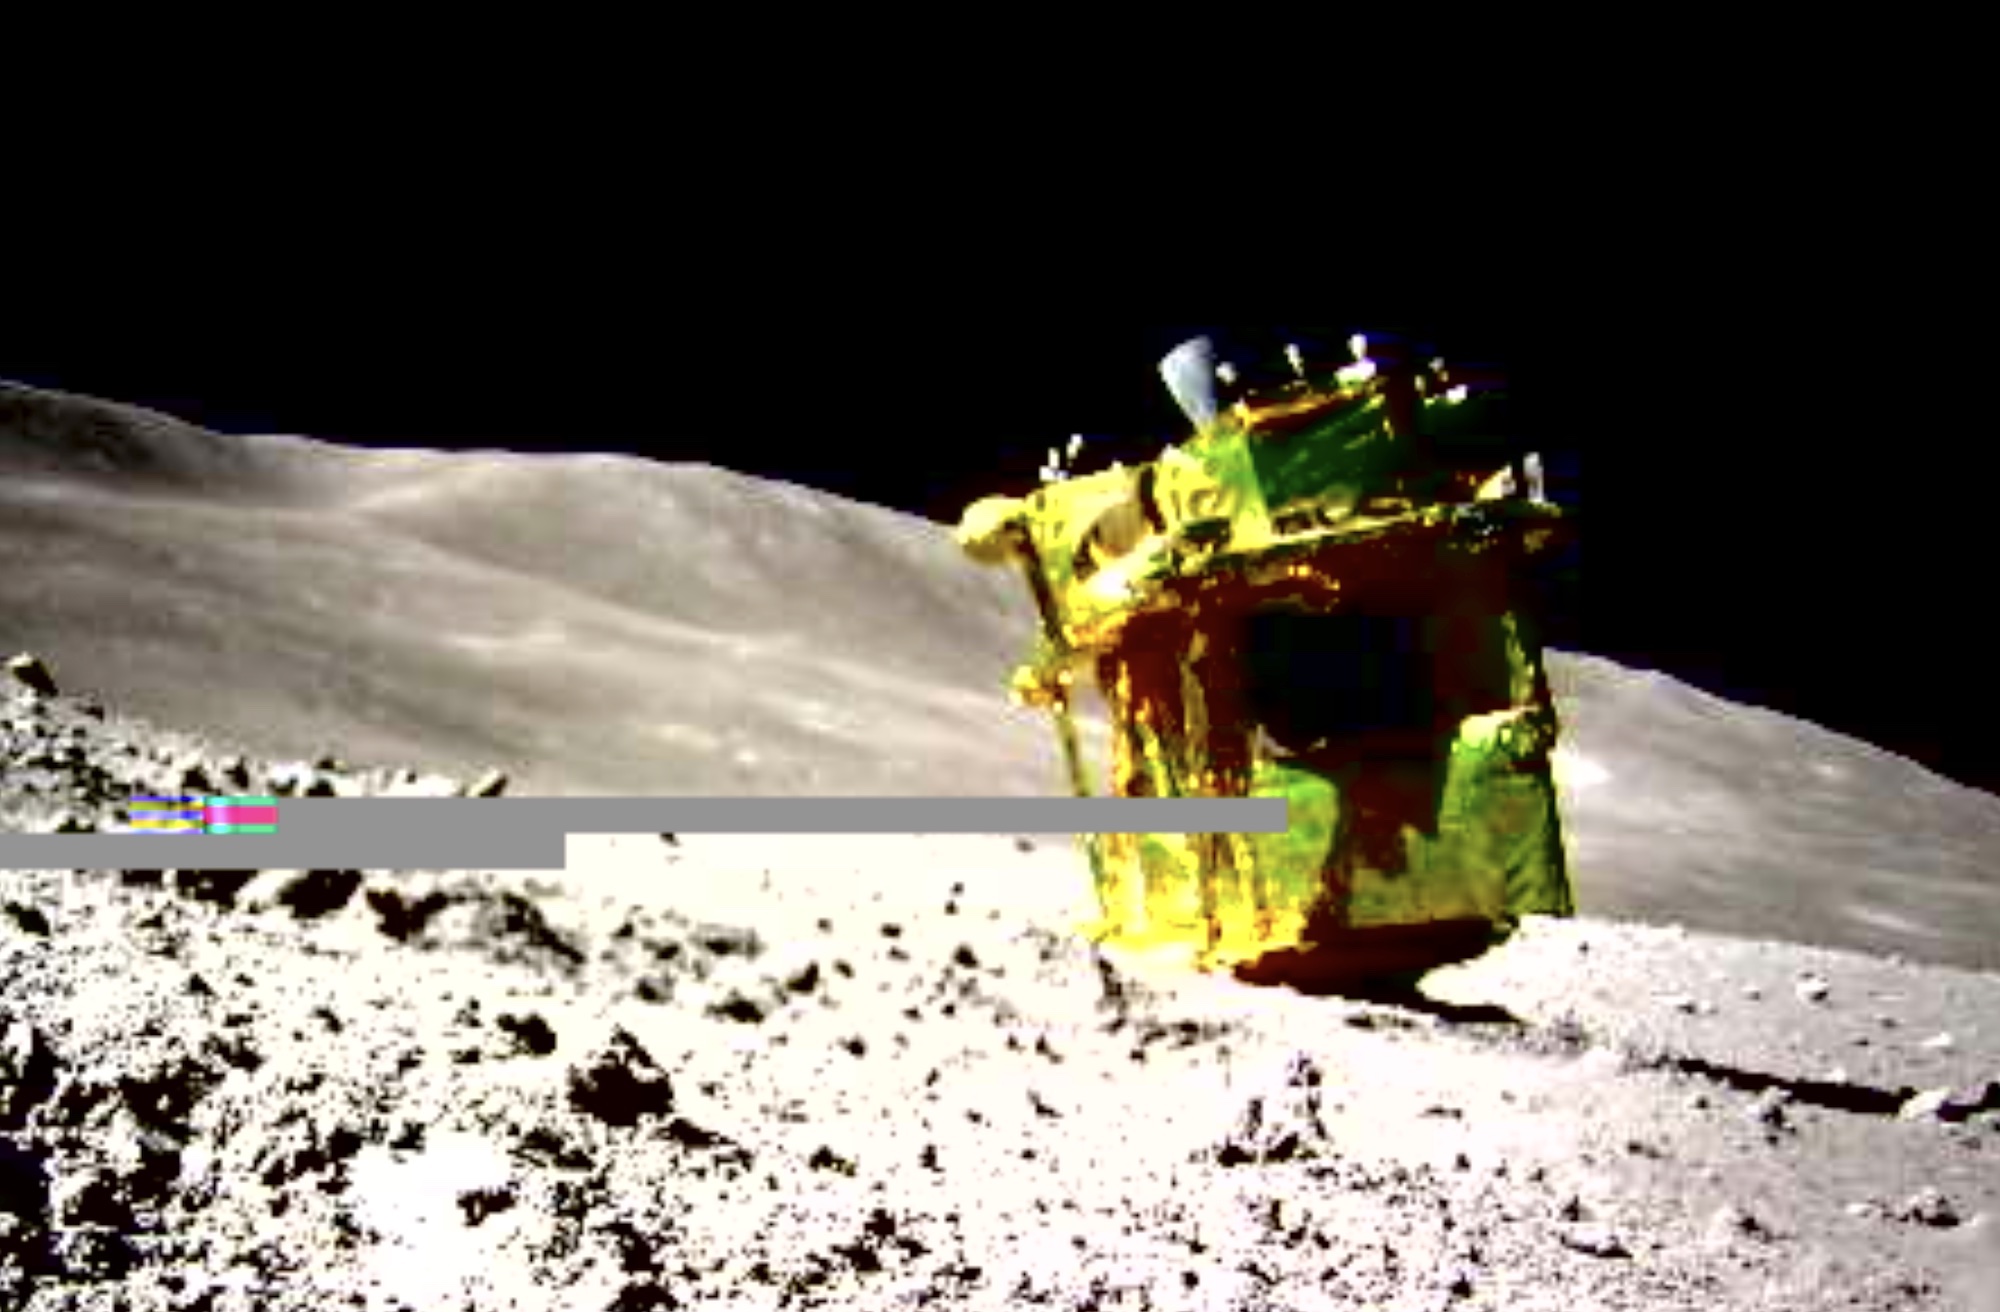 Japan Releases Image Showing Its Lunar Lander Upside Down Digital Trends 